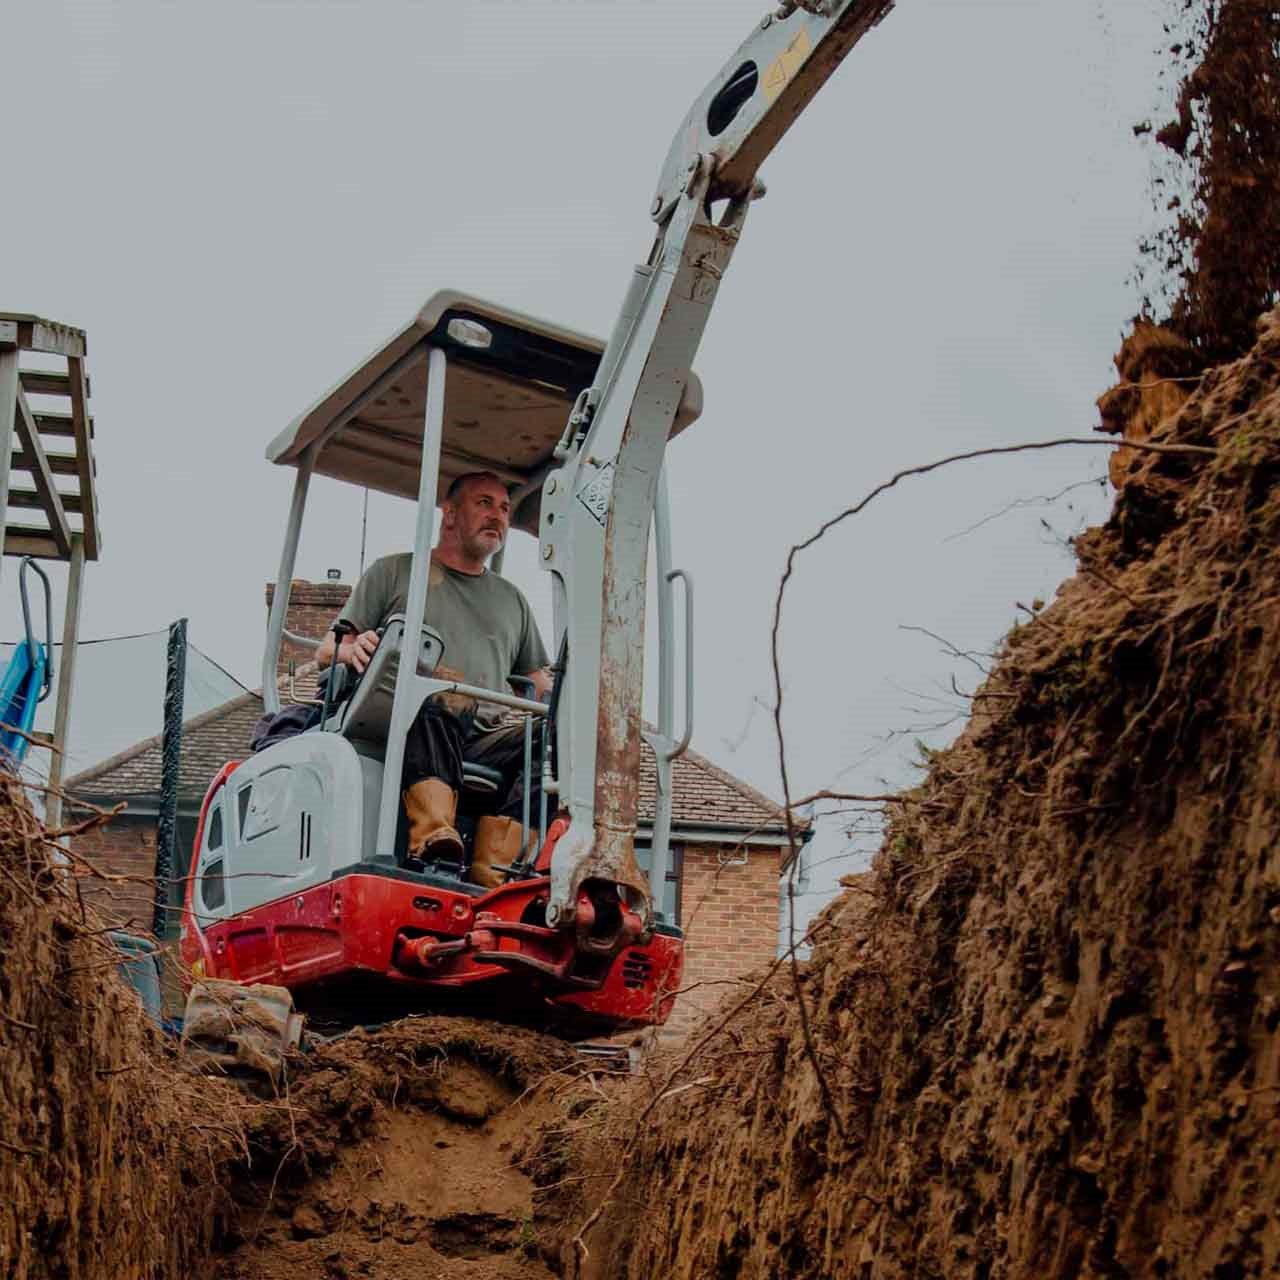 Homme manœuvrant une mini excavatrice blanche et rouge en location pour creuser un trou dans la terre.